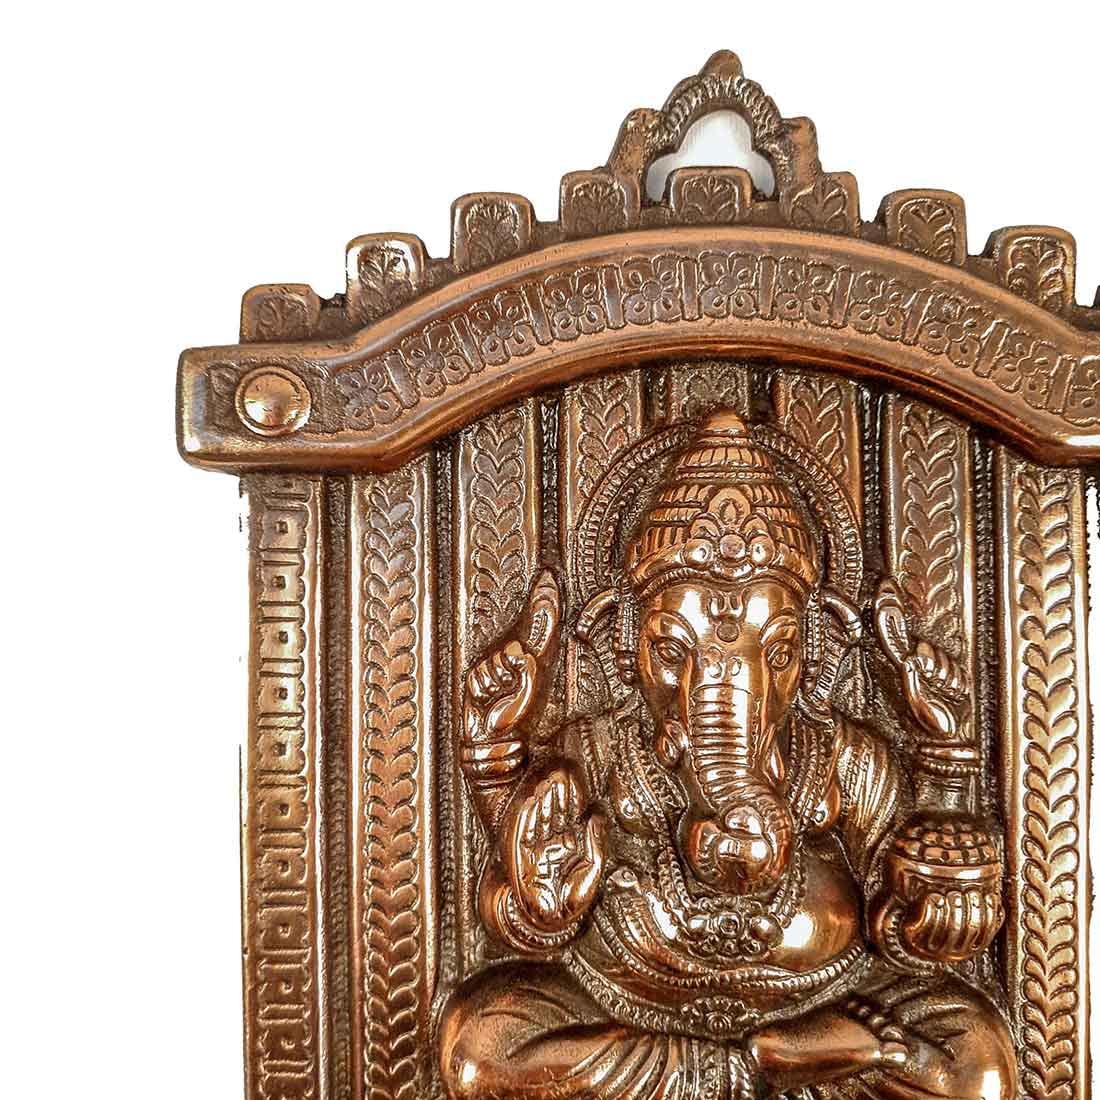 Ganesh Gifts | Buy Ganesh Showpiece Online at Best Price